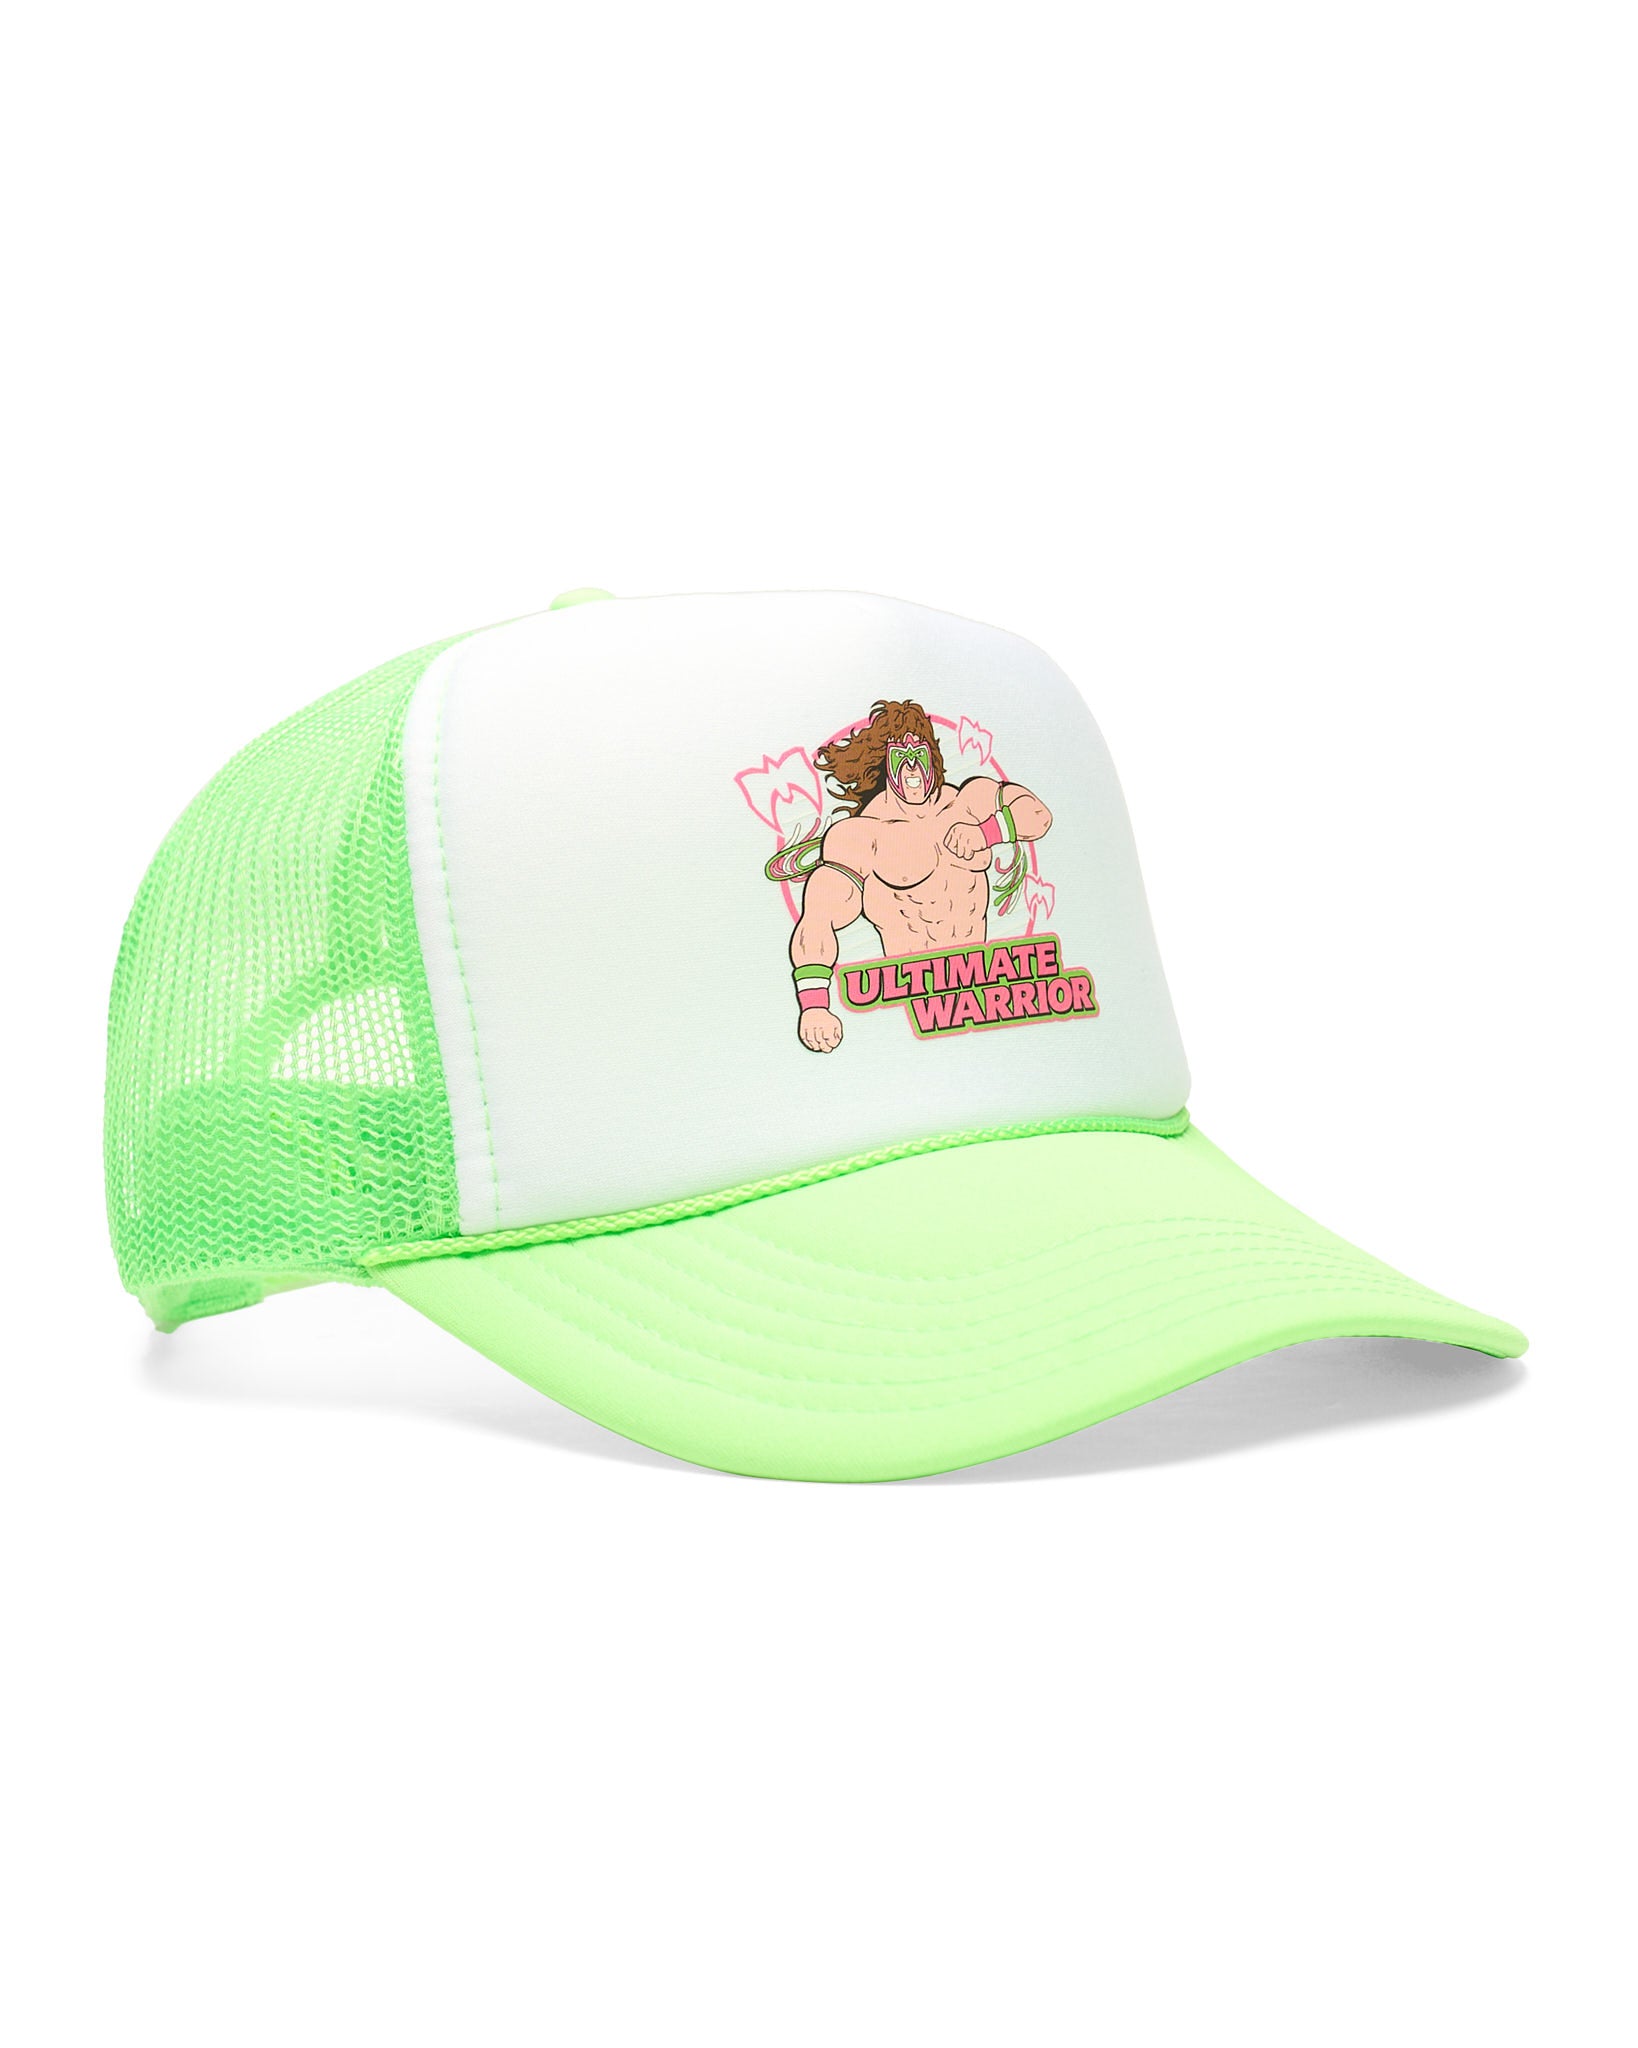 Ultimate Warrior Green Trucker Hat